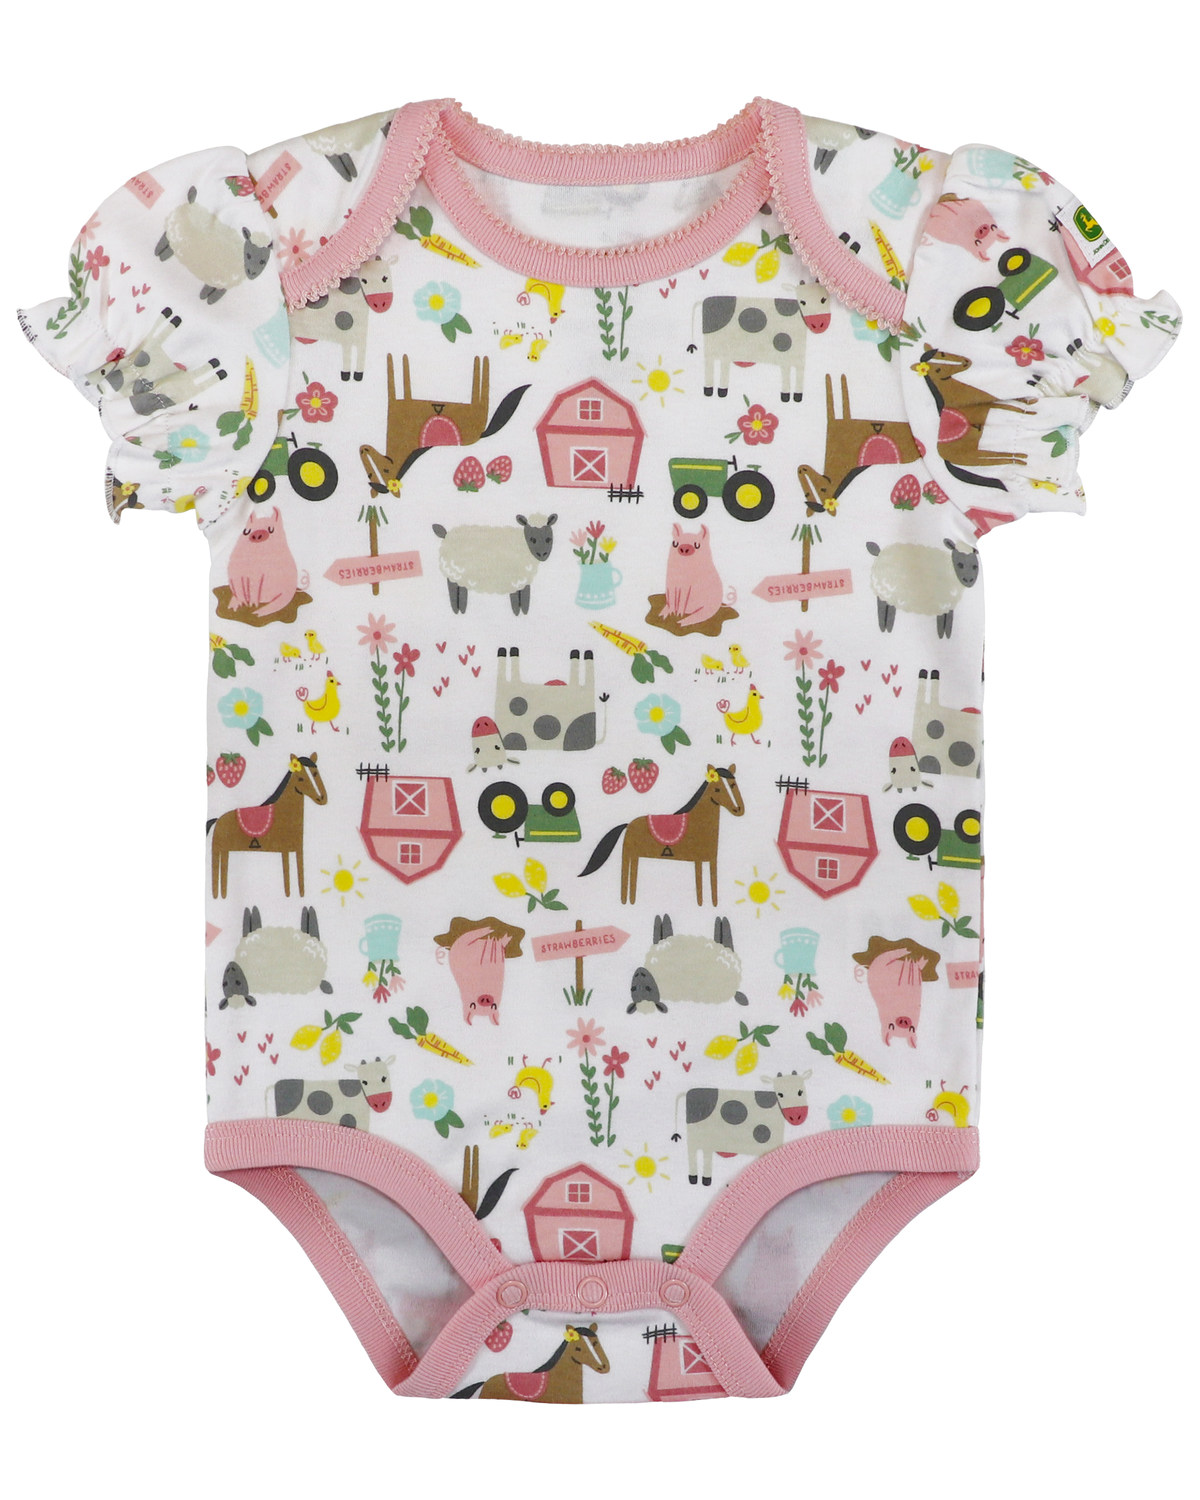 John Deere Infant Girls' Farm Graphic Print Ruffled Short Sleeve Onesie